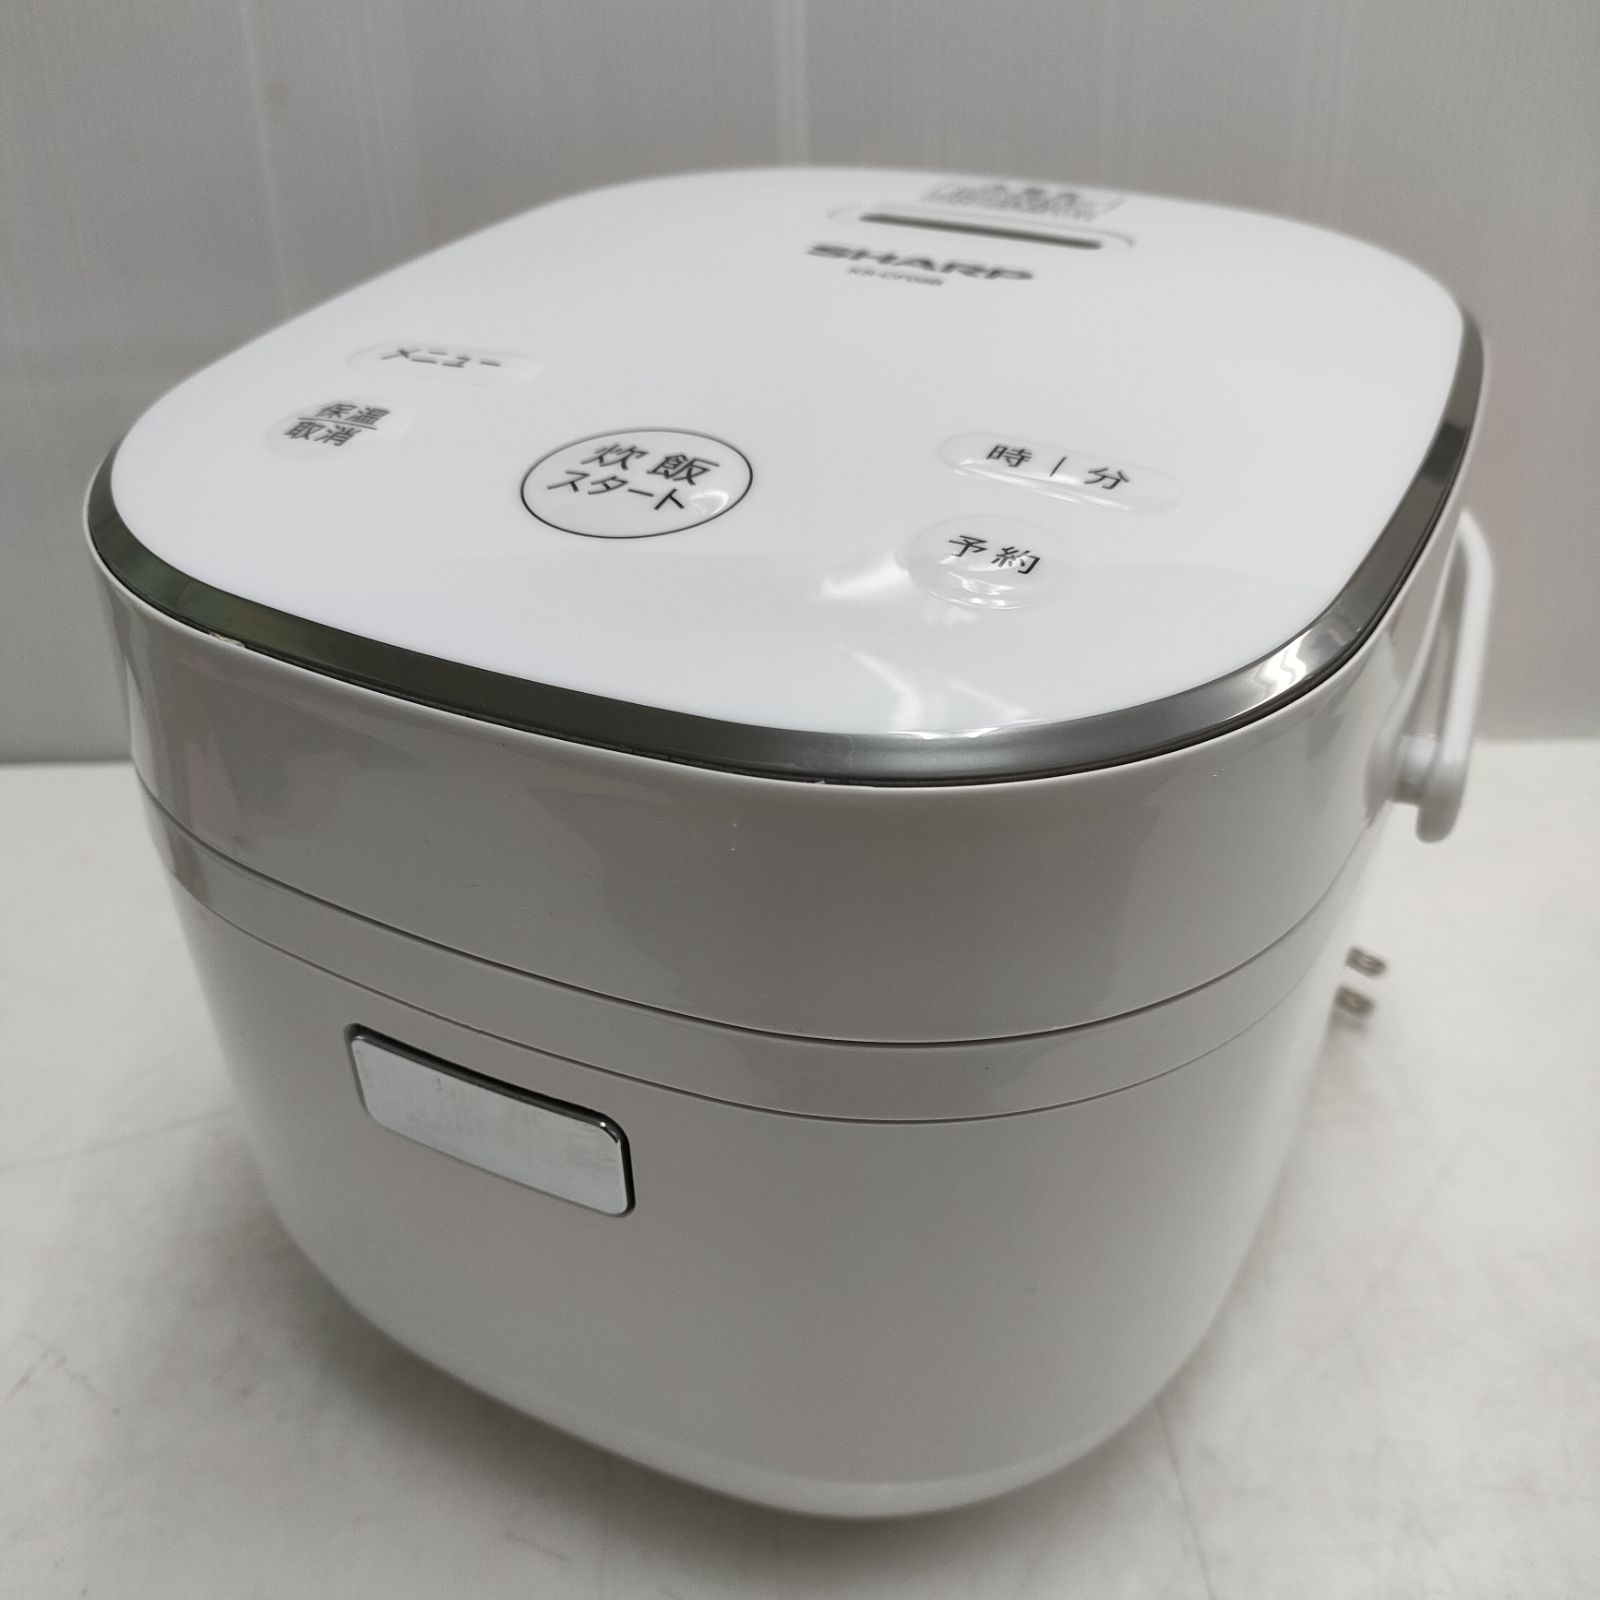 ジャー炊飯器 3合炊き【 KS-CF05B-W - 炊飯器・餅つき機